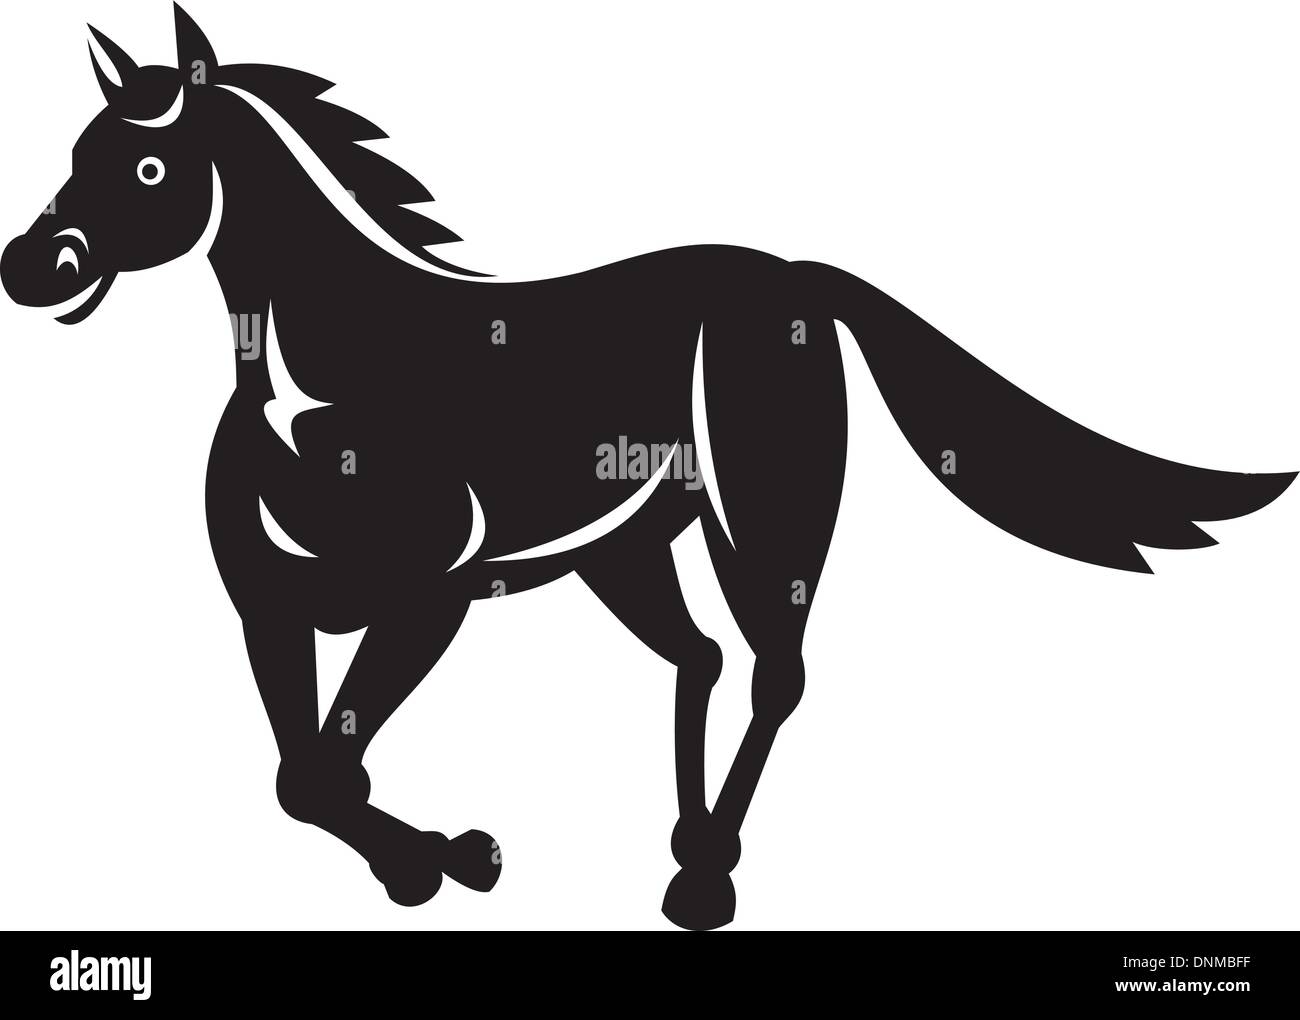 Illustrazione di un cavallo in funzione eseguita in bianco e nero Illustrazione Vettoriale